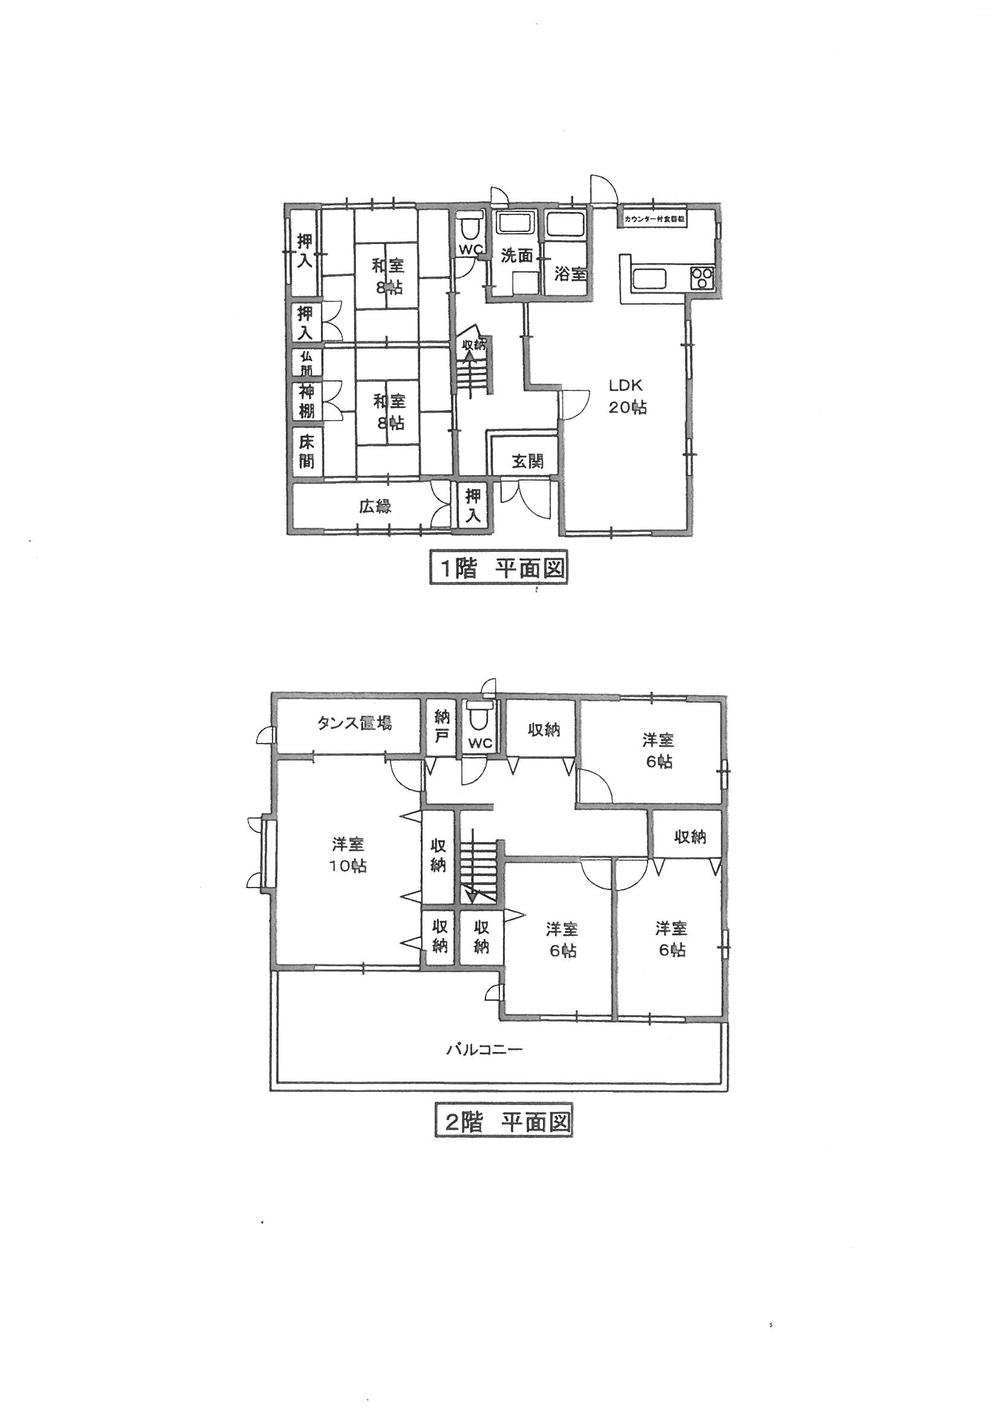 Floor plan. 10.8 million yen, 6LDK, Land area 208.1 sq m , Building area 172.21 sq m